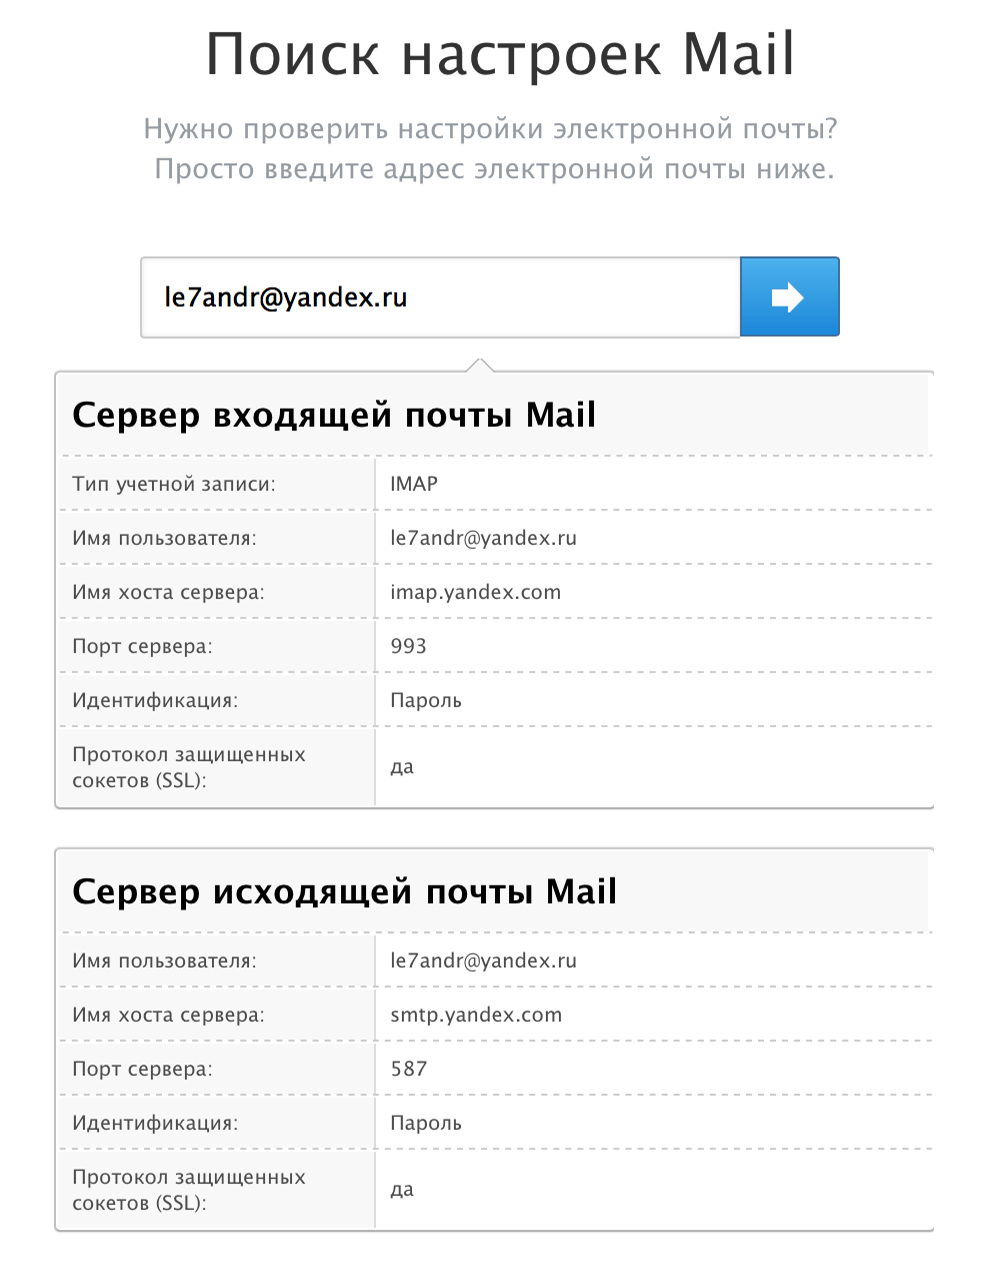 Настройки почты для Яндекс-Почты